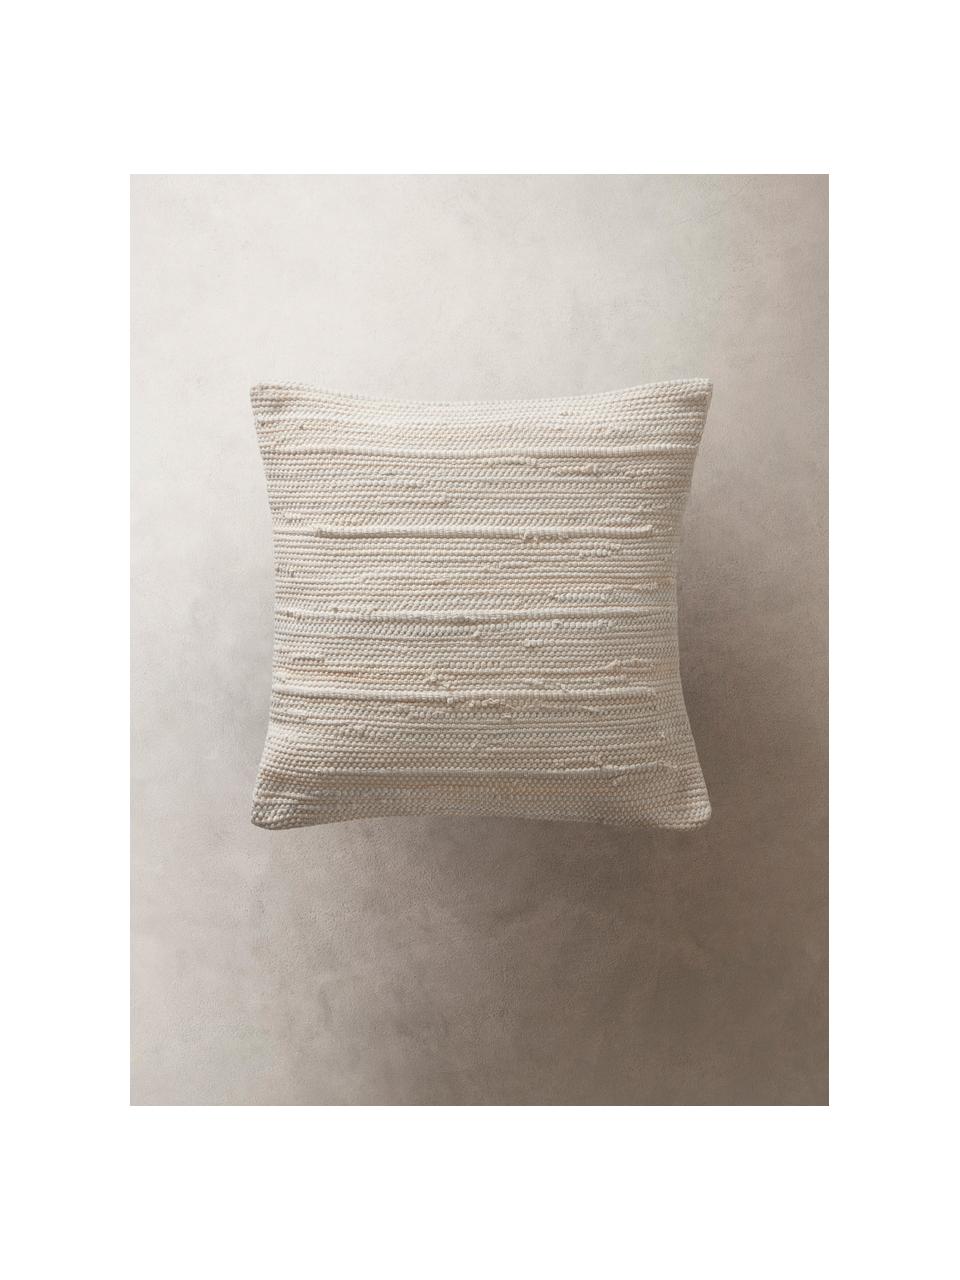 Kissenhülle Elvira mit strukturierter Oberfläche, 90% recycelte Baumwolle, 10% Baumwolle, Cremefarben, B 50 x L 50 cm